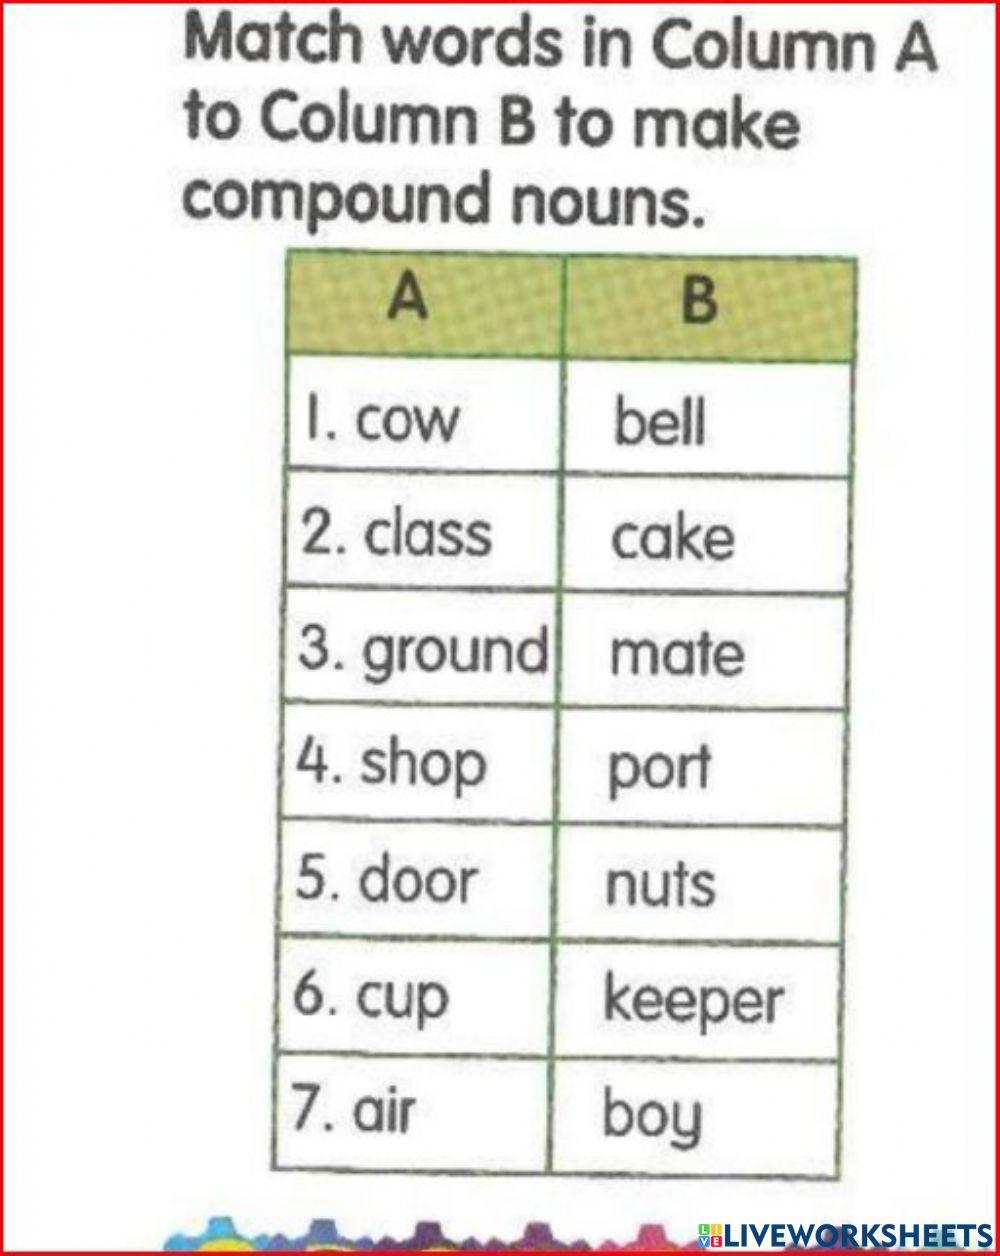 Compound nouns